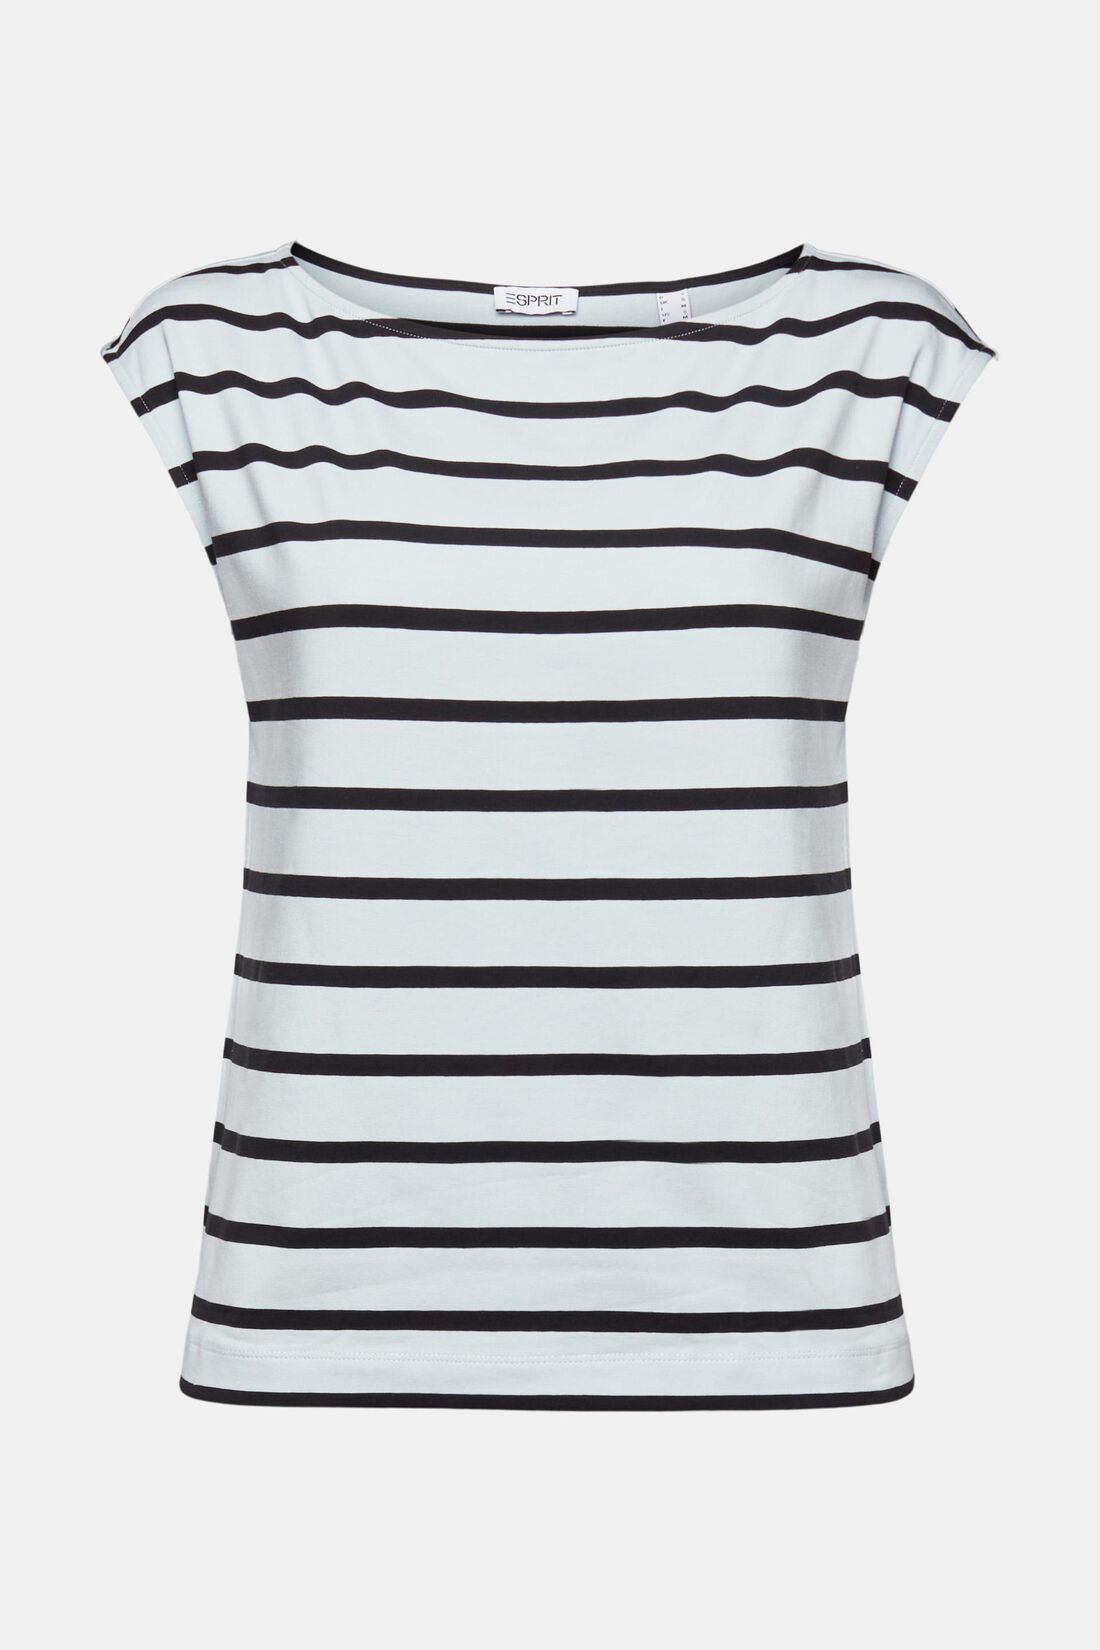 Esprit Boatneck Striped Short Sleeve T-Shirt